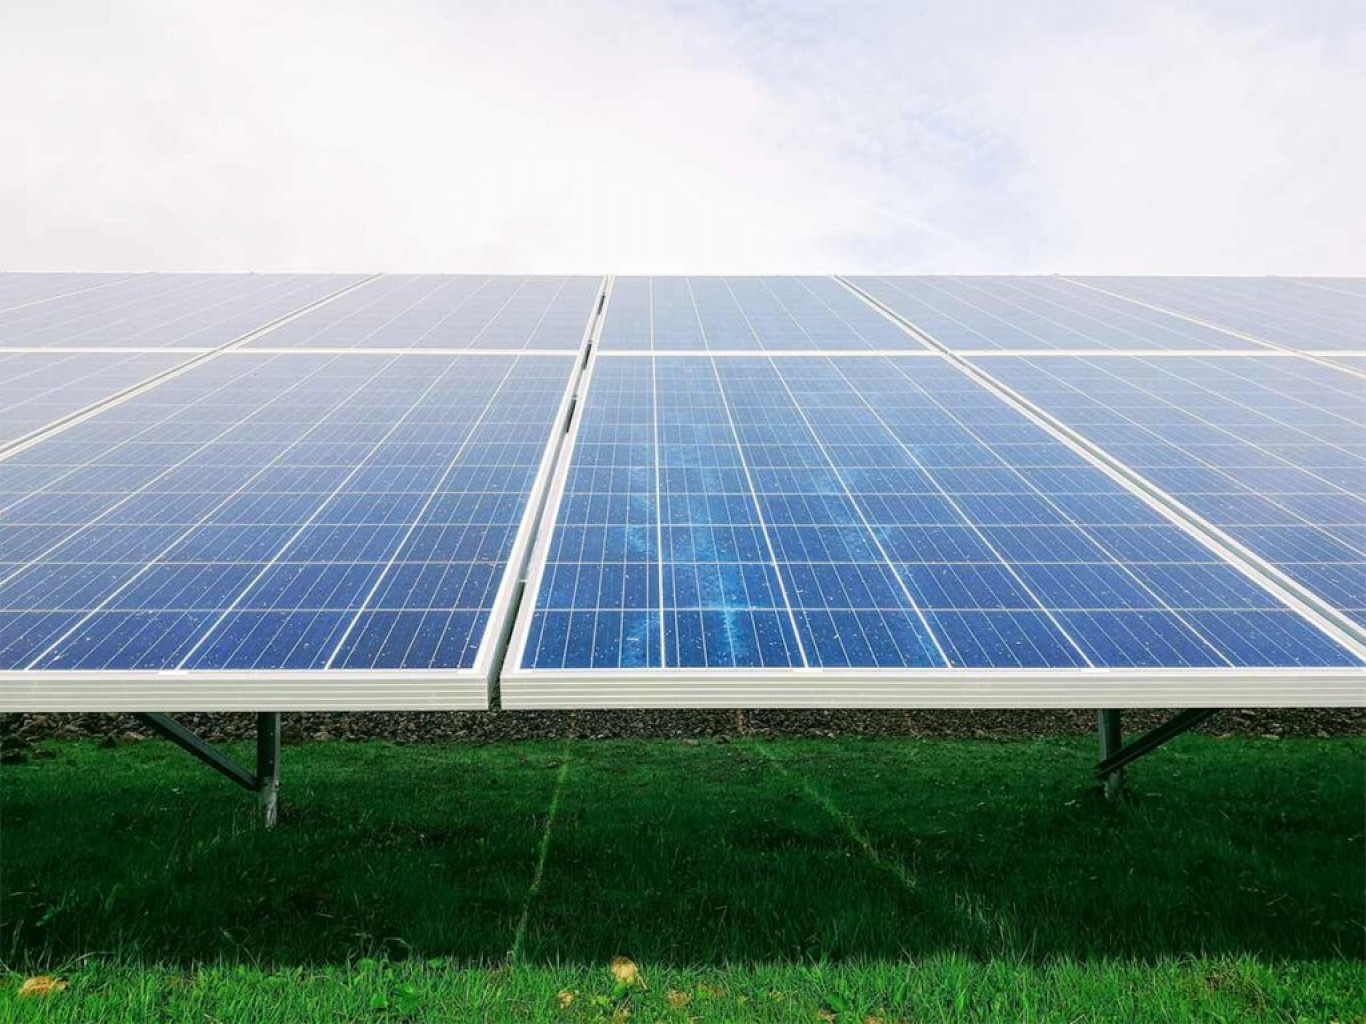 Päikeseenergia on üks jätkusuutlikumaid energiaallikaid.Alates 2020. aastast on Evecon valmis ehitanud erinevaid päikeseparke koguvõimsusega 40 MW. Alates 2022 